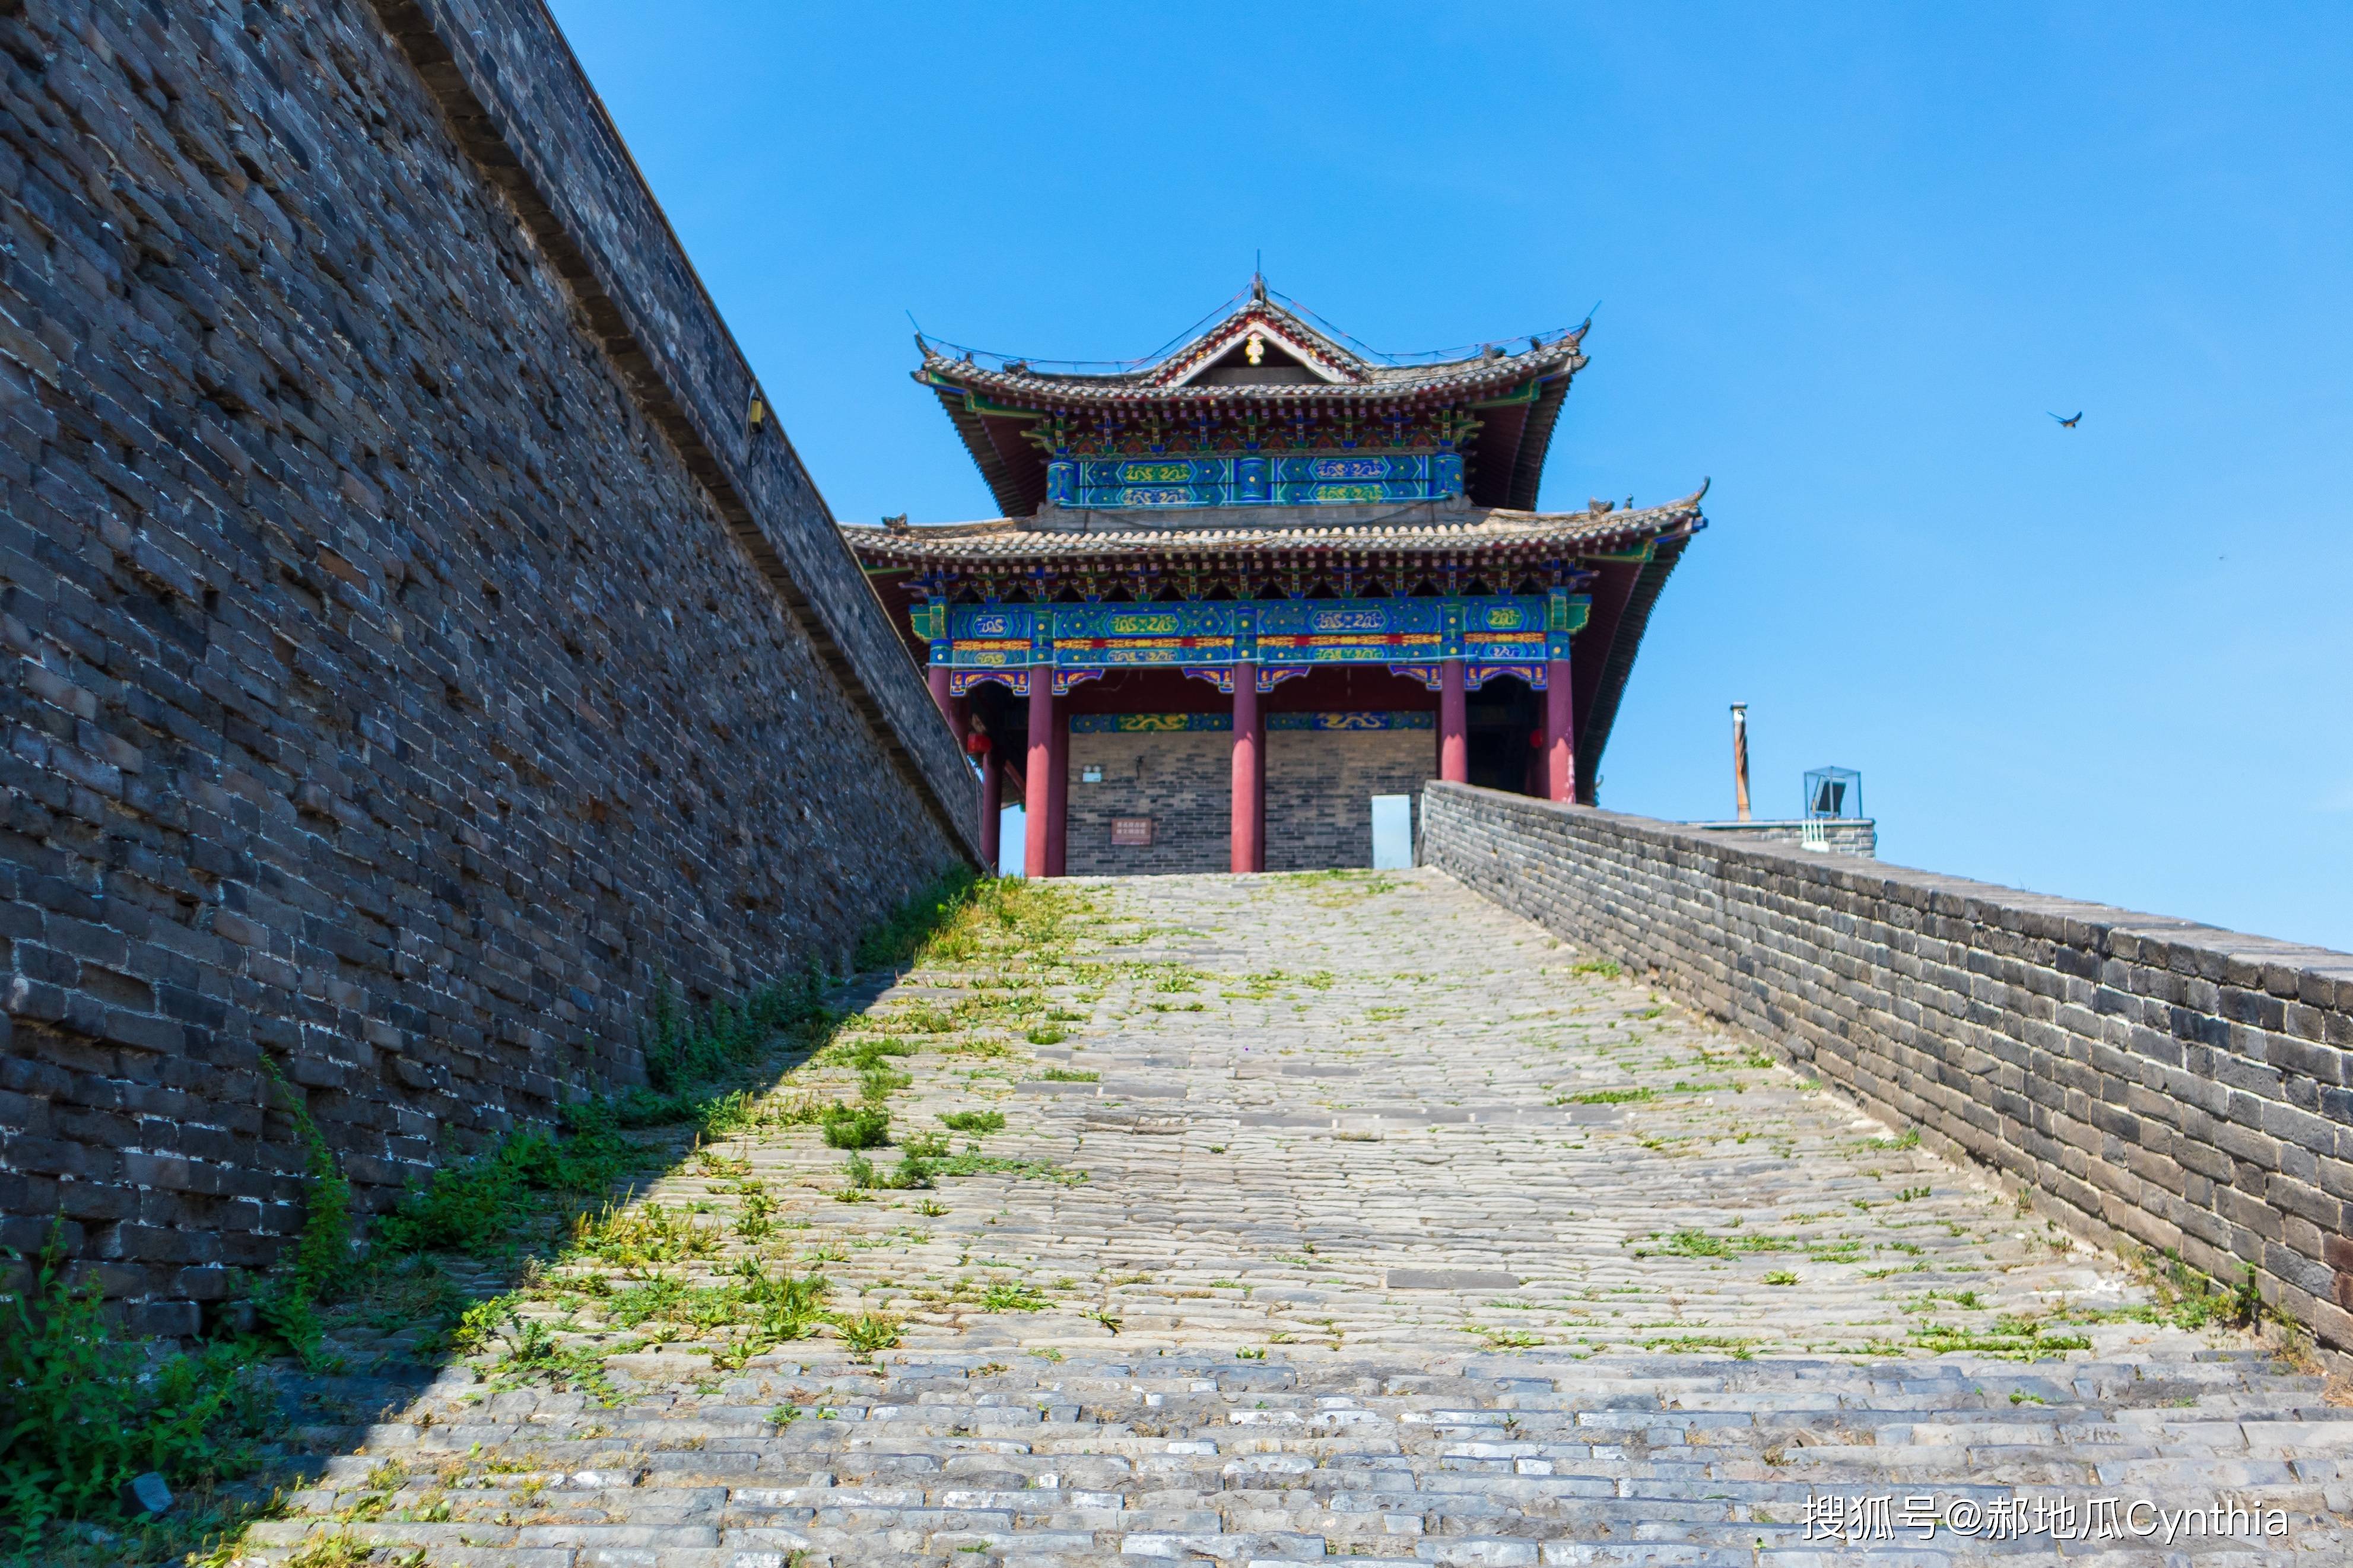 邯郸有座小江南,还是著名的太极城,有两千多年的历史